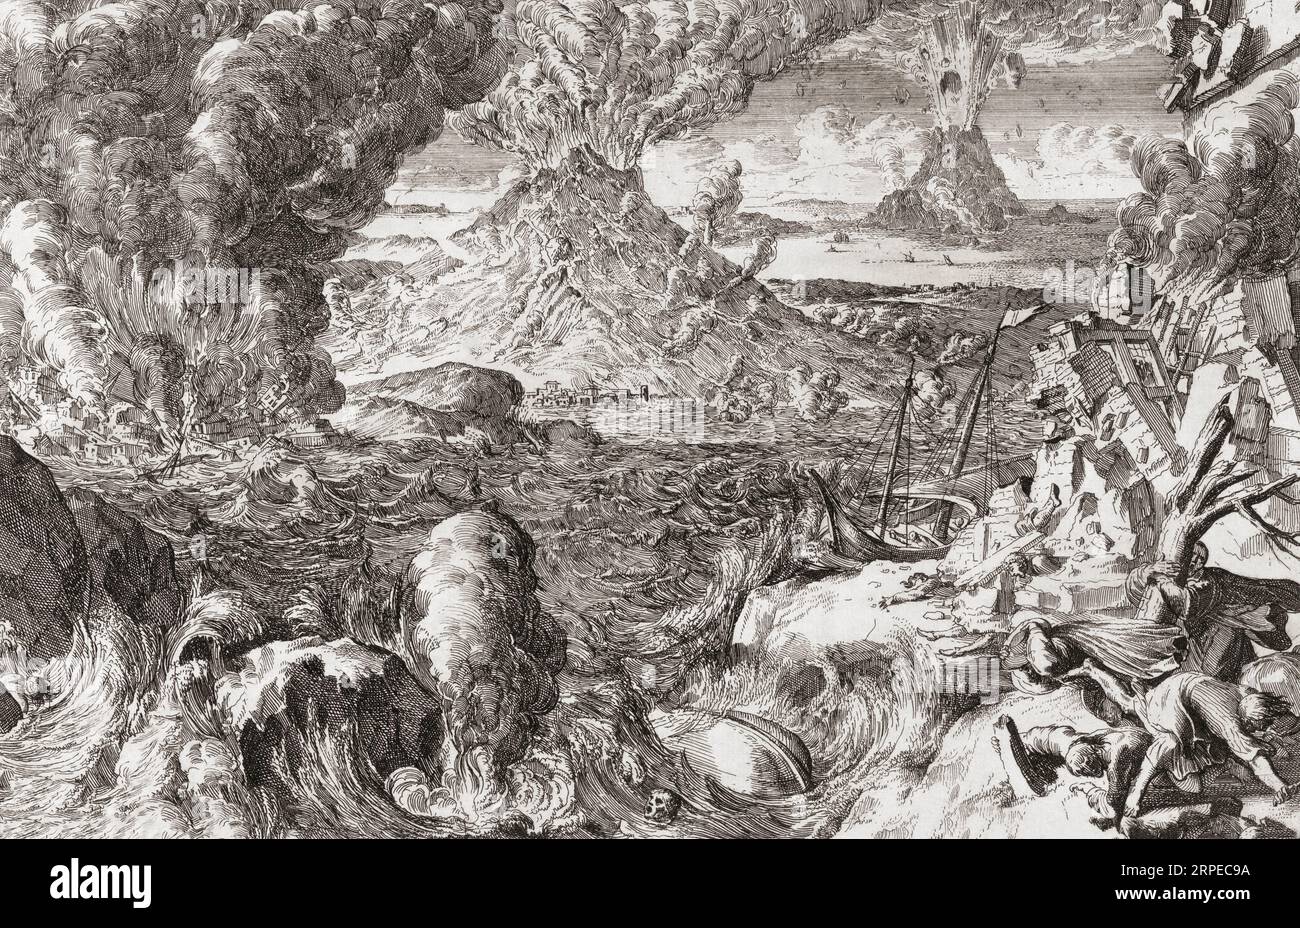 Vulkane und Stürme, nach einem Werk von Romeyn de Hooghe aus dem 18. Jahrhundert. Anstatt sich auf einen bestimmten Vorfall oder geografischen Ort zu konzentrieren, hat de Hooghe eine thematische Arbeit erstellt, die das Schlimmste zeigt, was die Natur dem Menschen antun kann: Vulkanausbrüche, Überschwemmungen, Stürme, Erdbeben Stockfoto